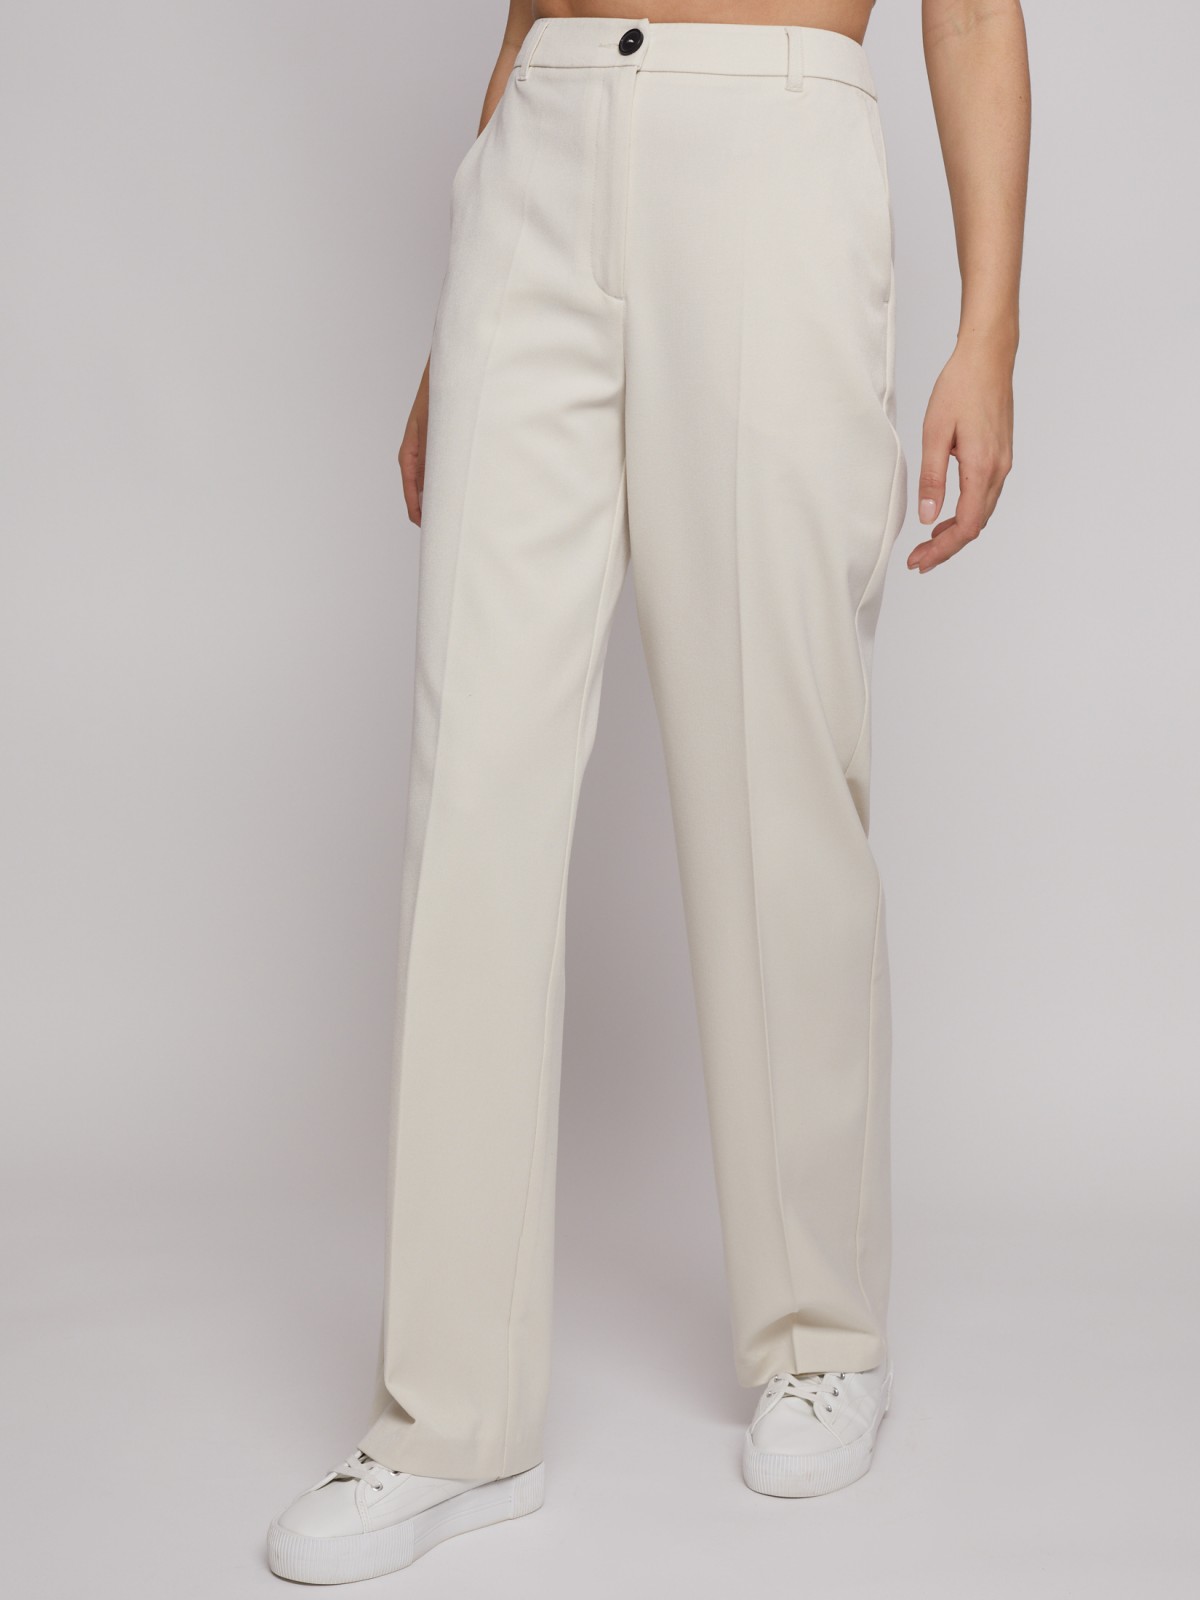 Прямые брюки со стрелками zolla 022217366131, цвет молоко, размер XS - фото 3